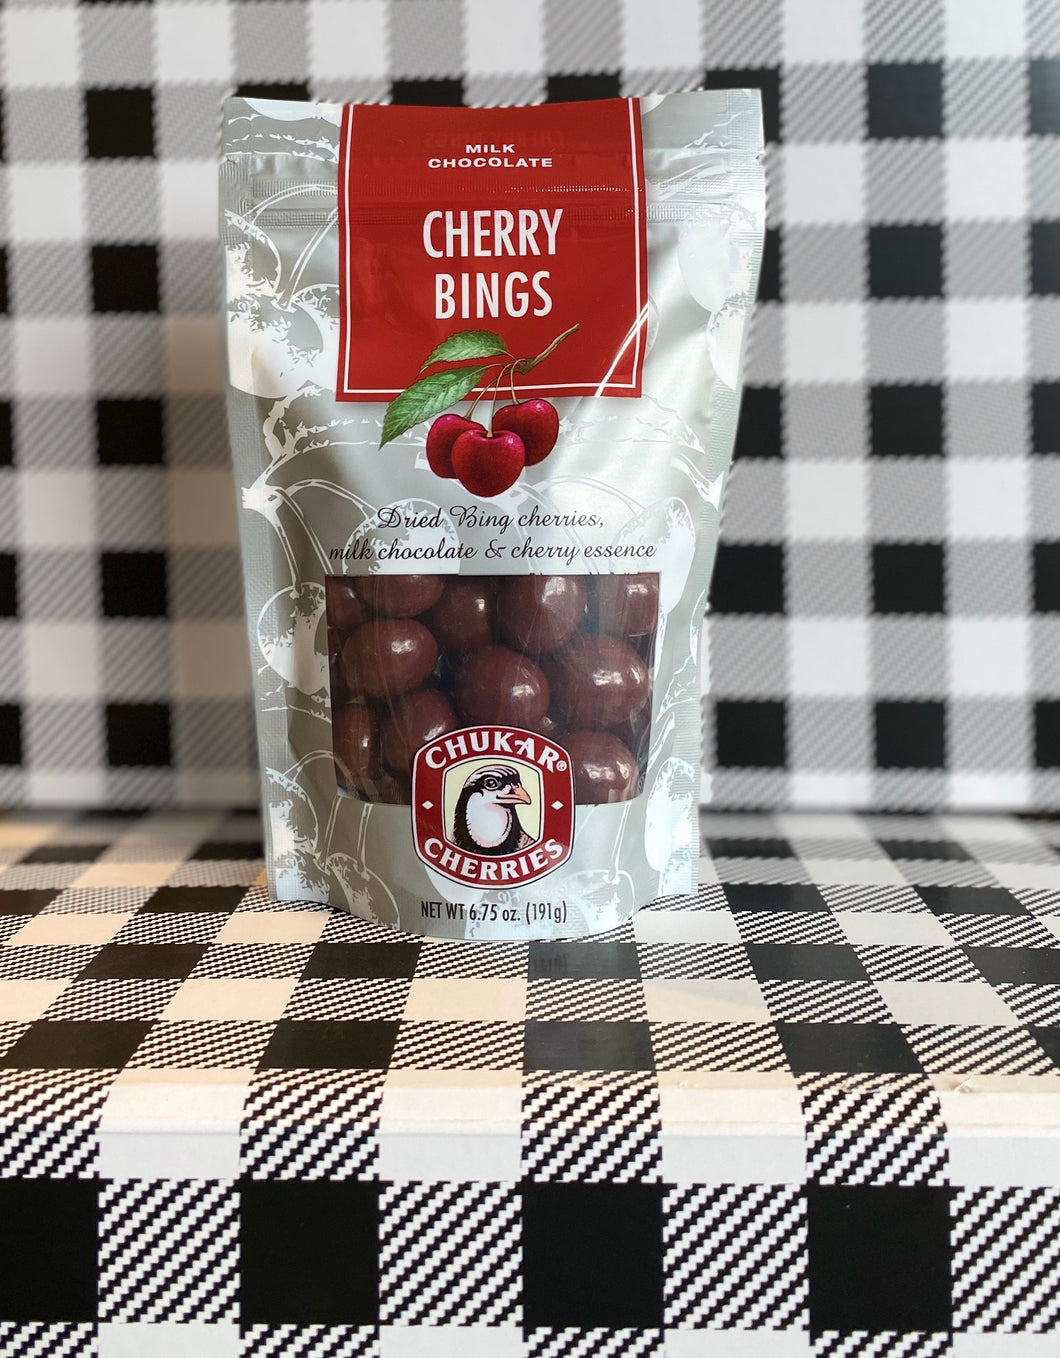 Cherry Bings